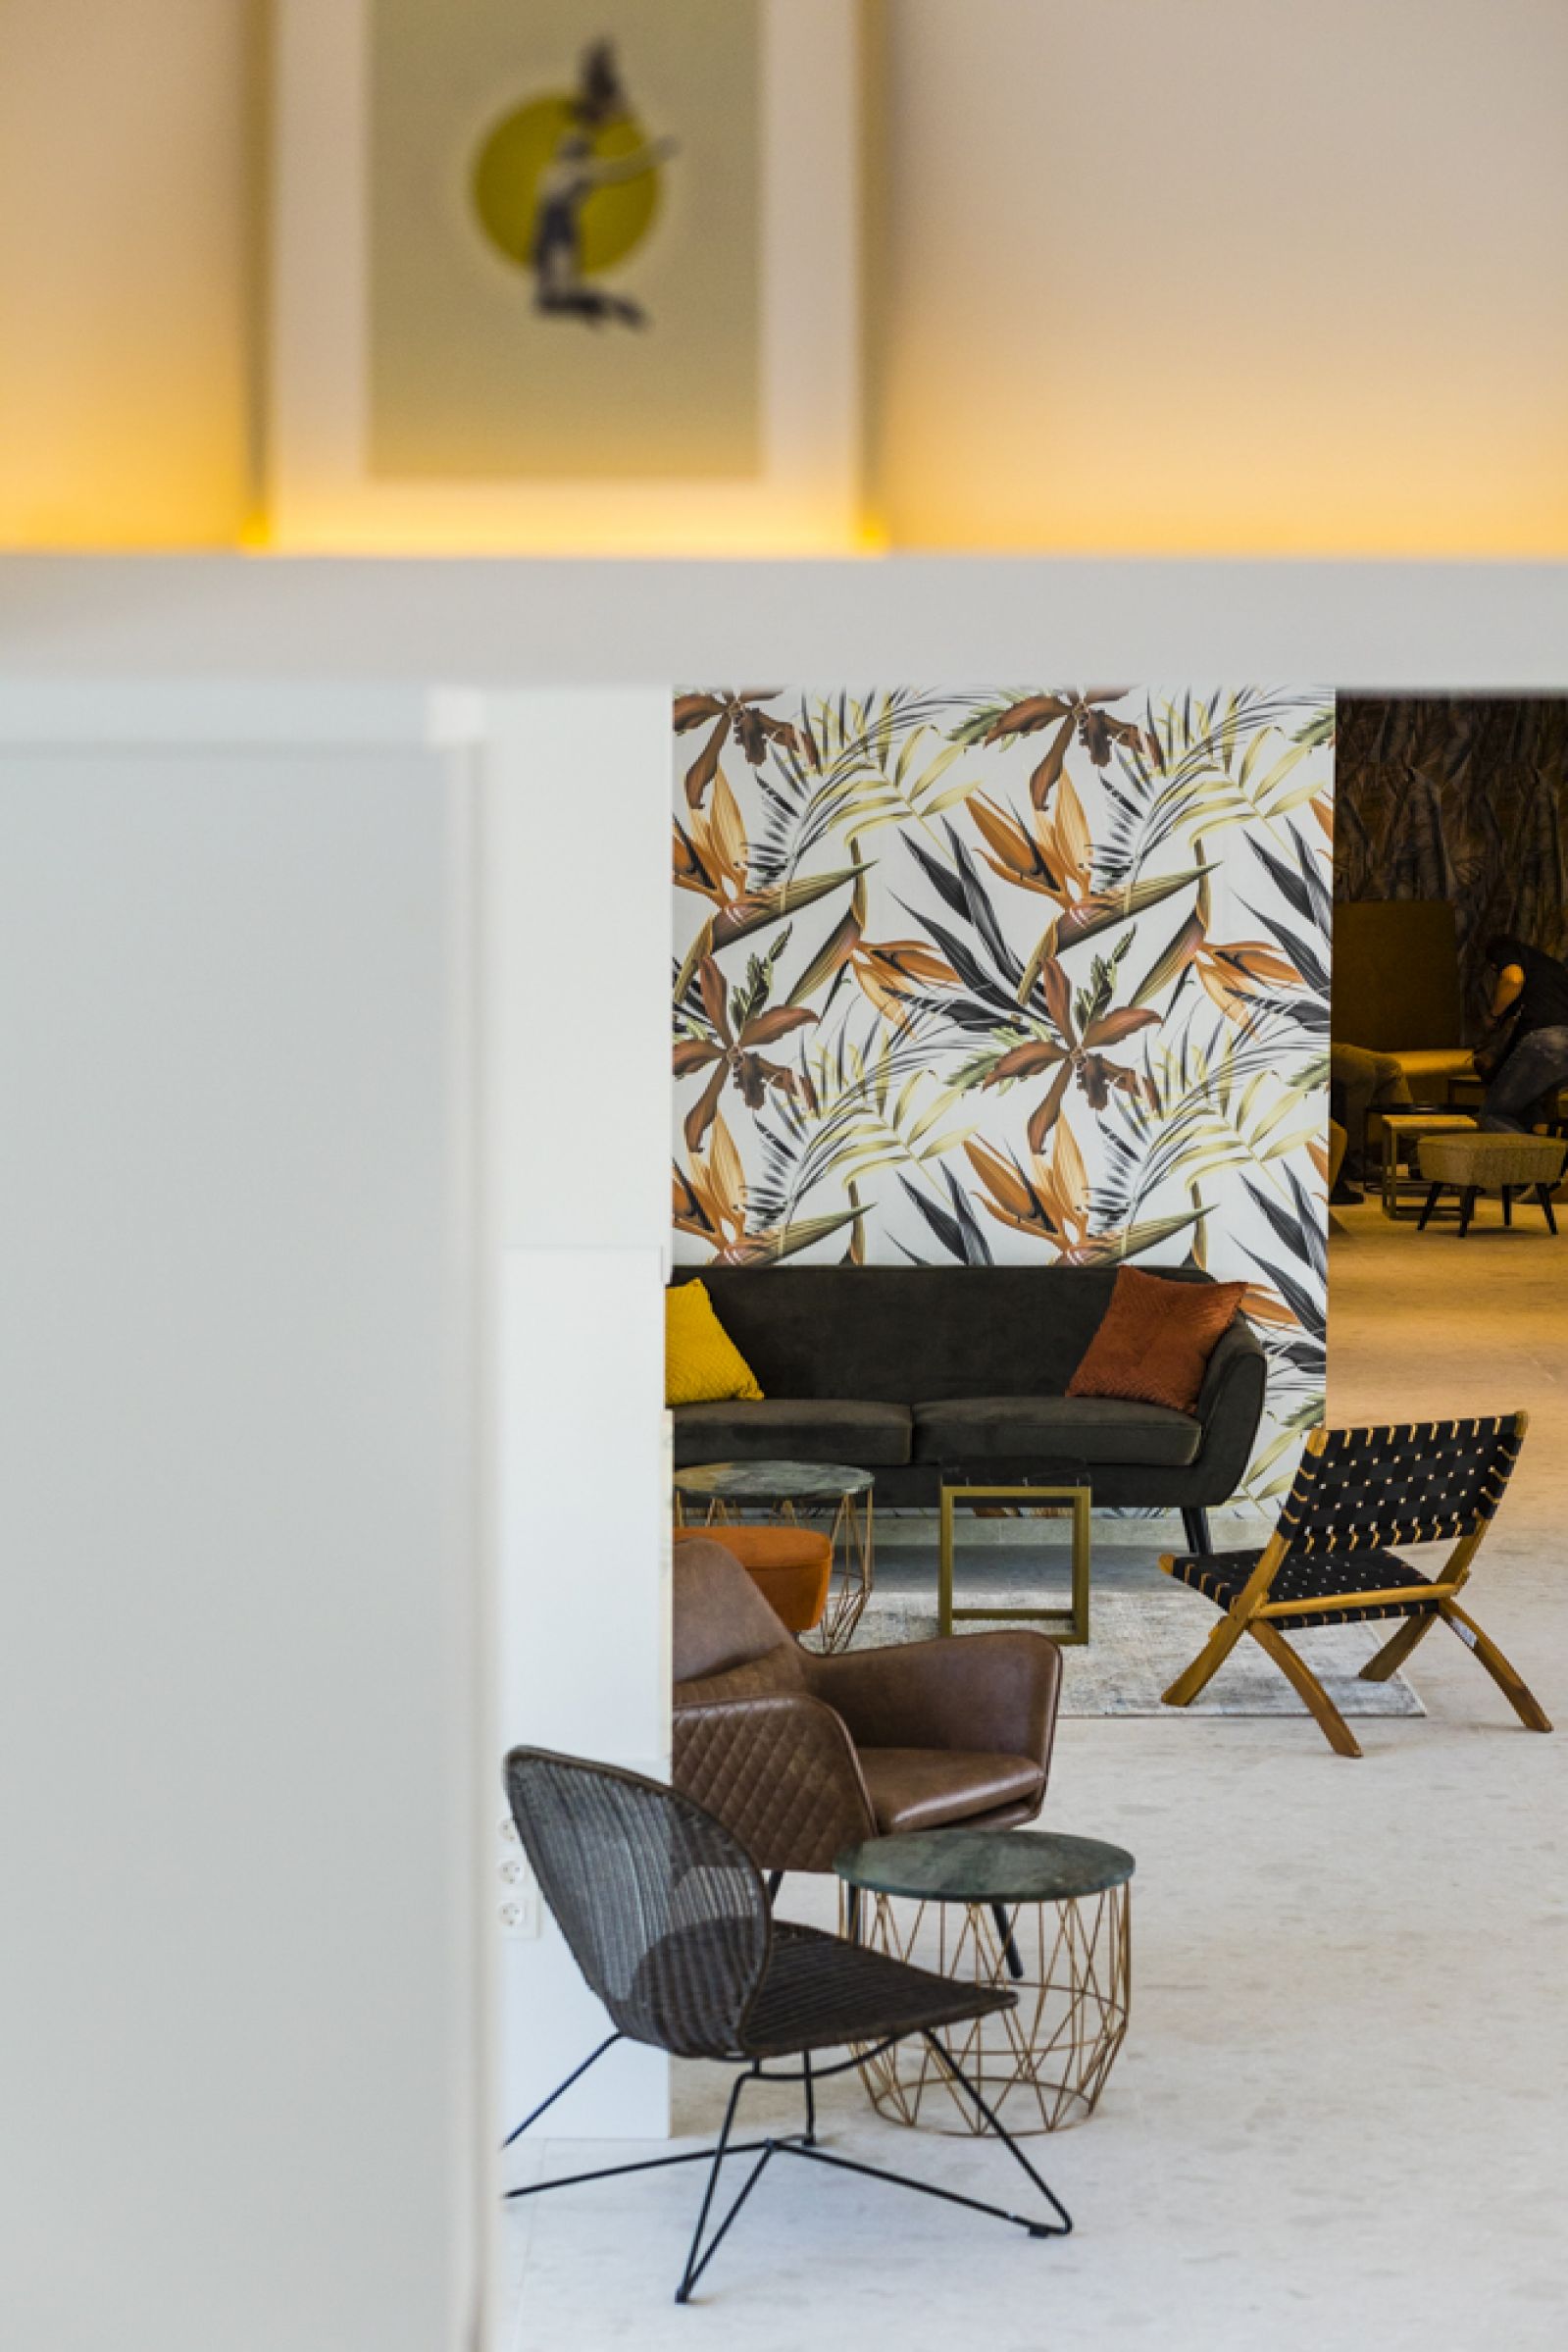 Hotel Zefir heeft voor hun hotel inrichting gekozen voor projectmeubilair van De Eekhoorn. Het project is uitgevoerd door Home Basic die gespecialiseerd zijn in hotel inrichting, horeca inrichting en project inrichting.